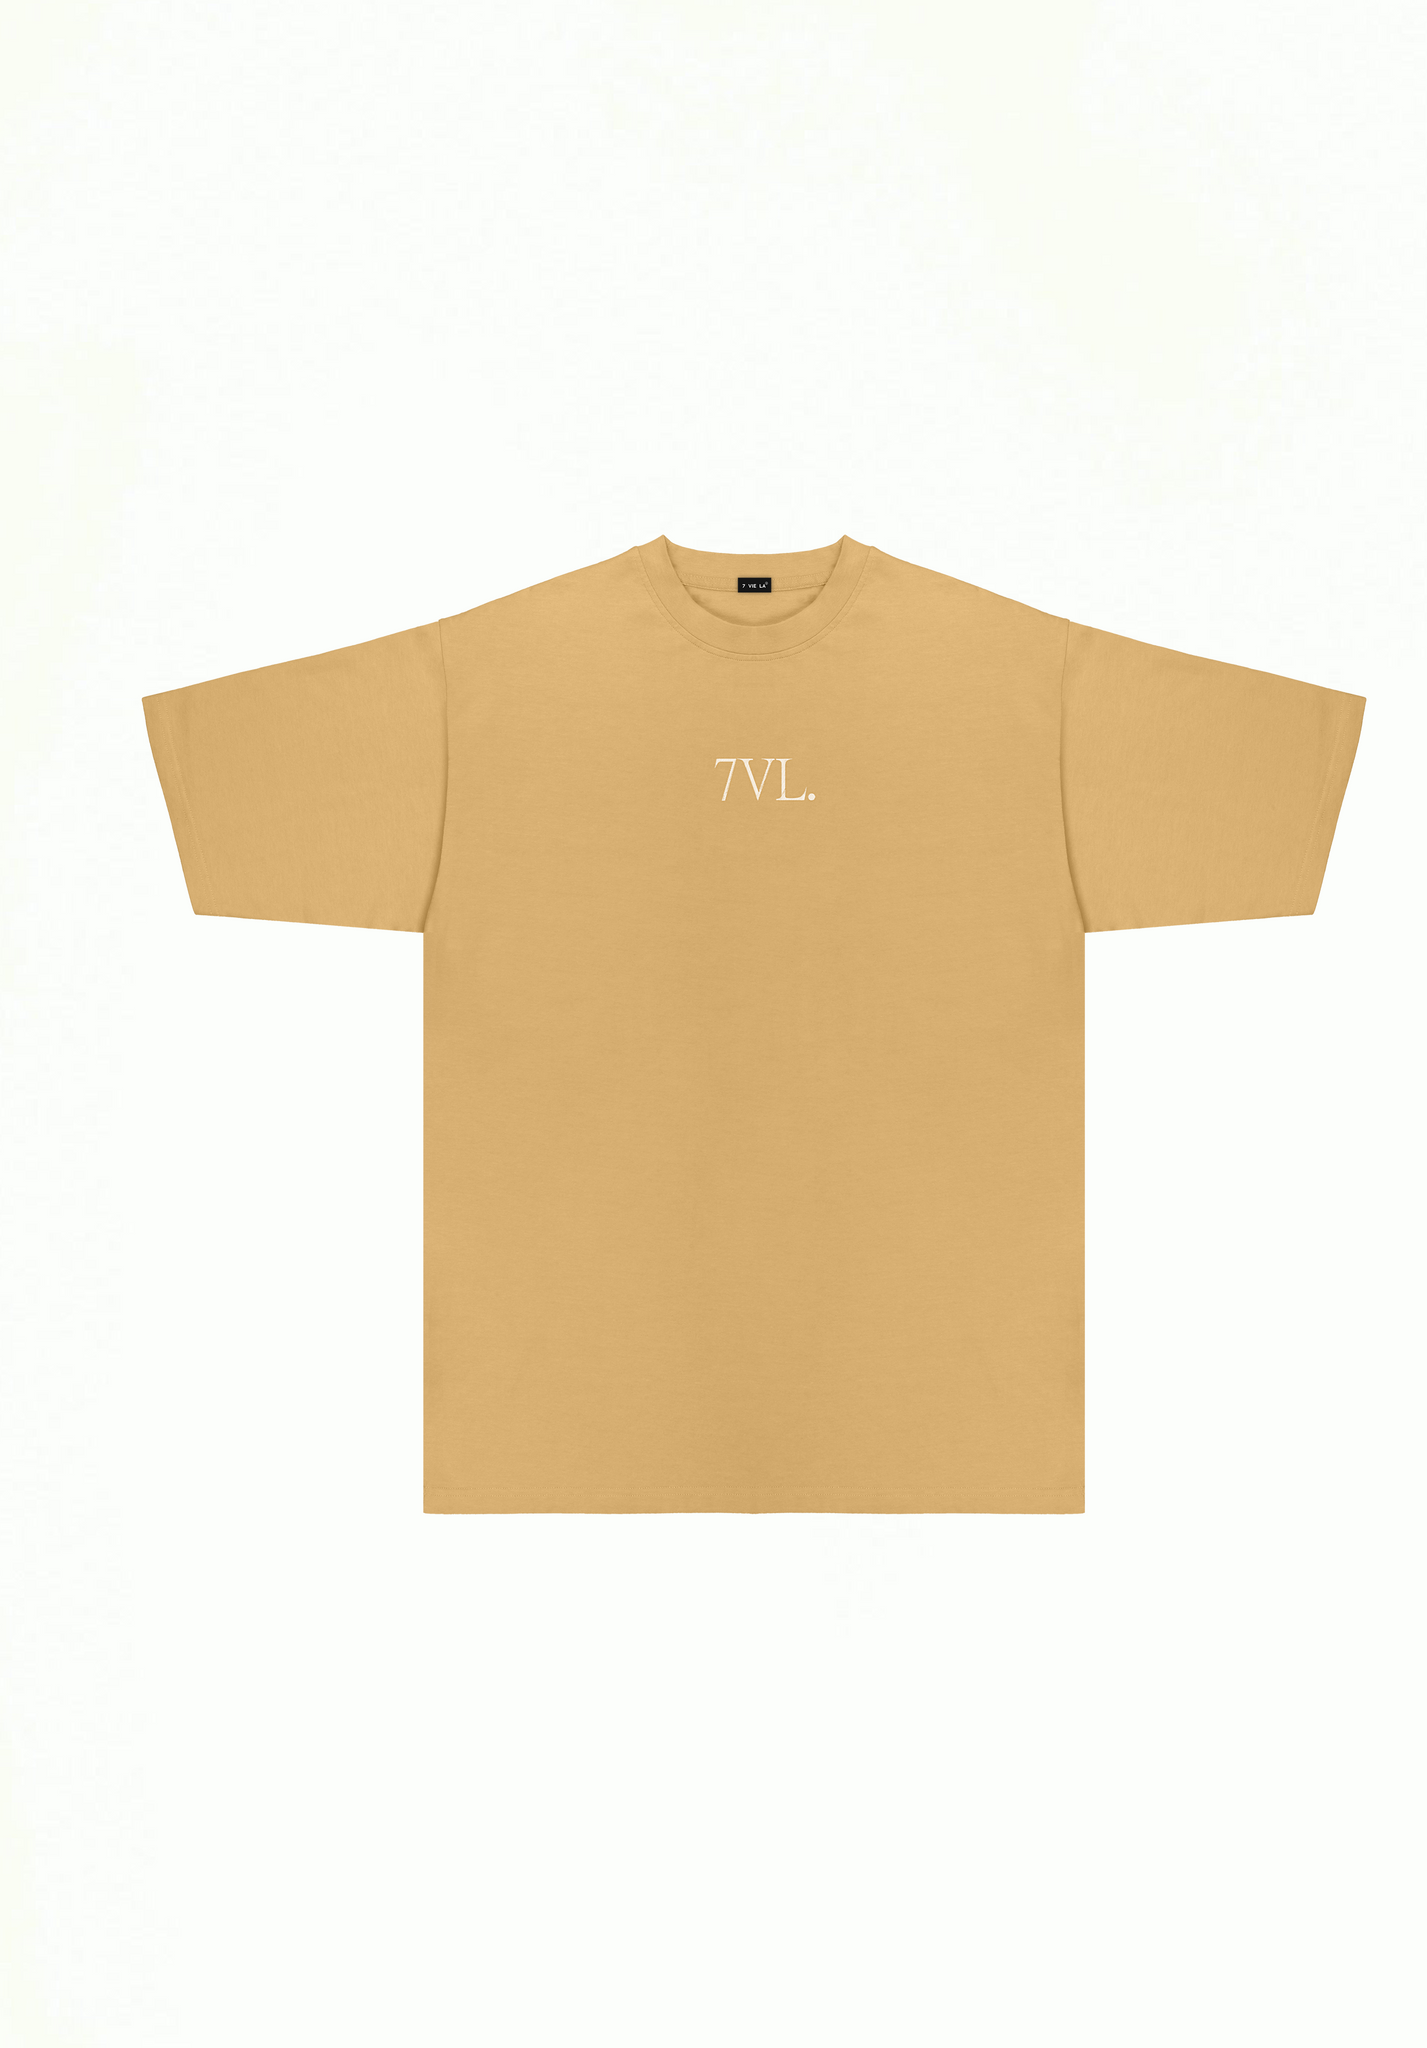 T-shirt 7VL.